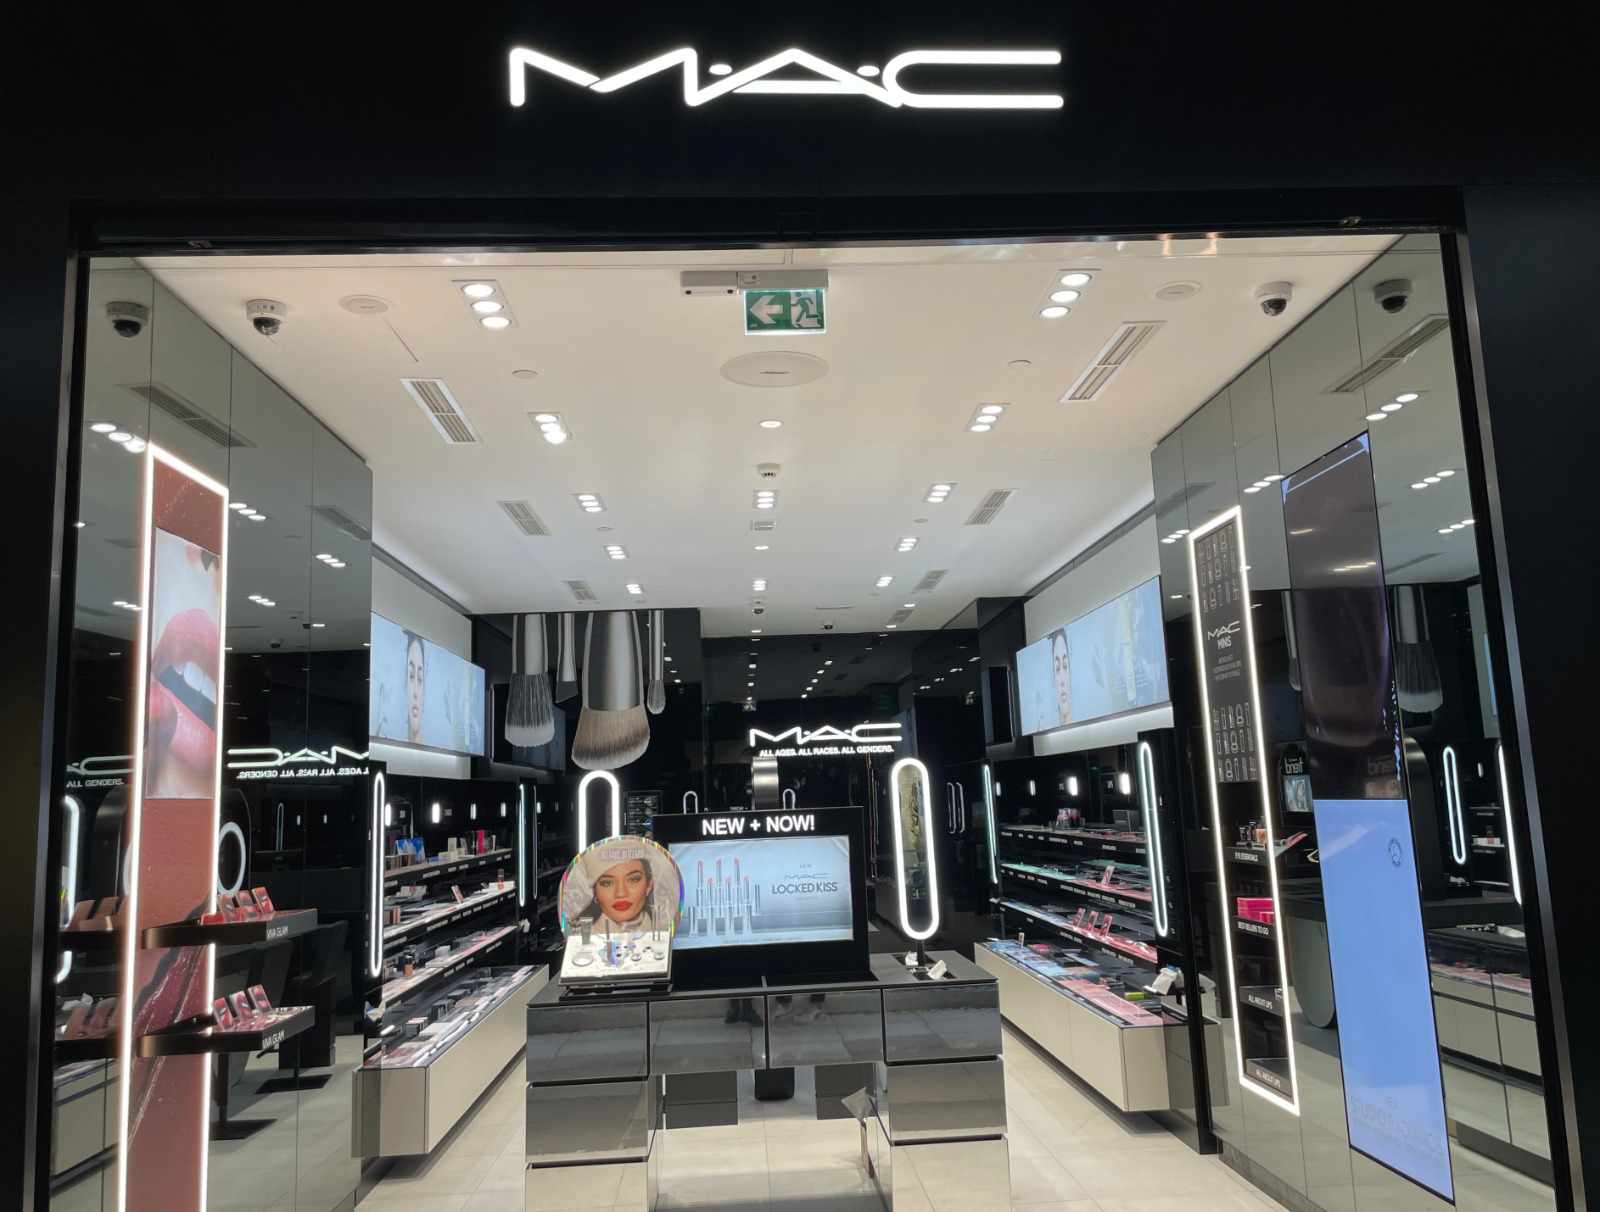 تلبية للطلب المتزايد على منتجاتها.. “MAC Cosmetics” تفتح متجرا جديدا بالرباط